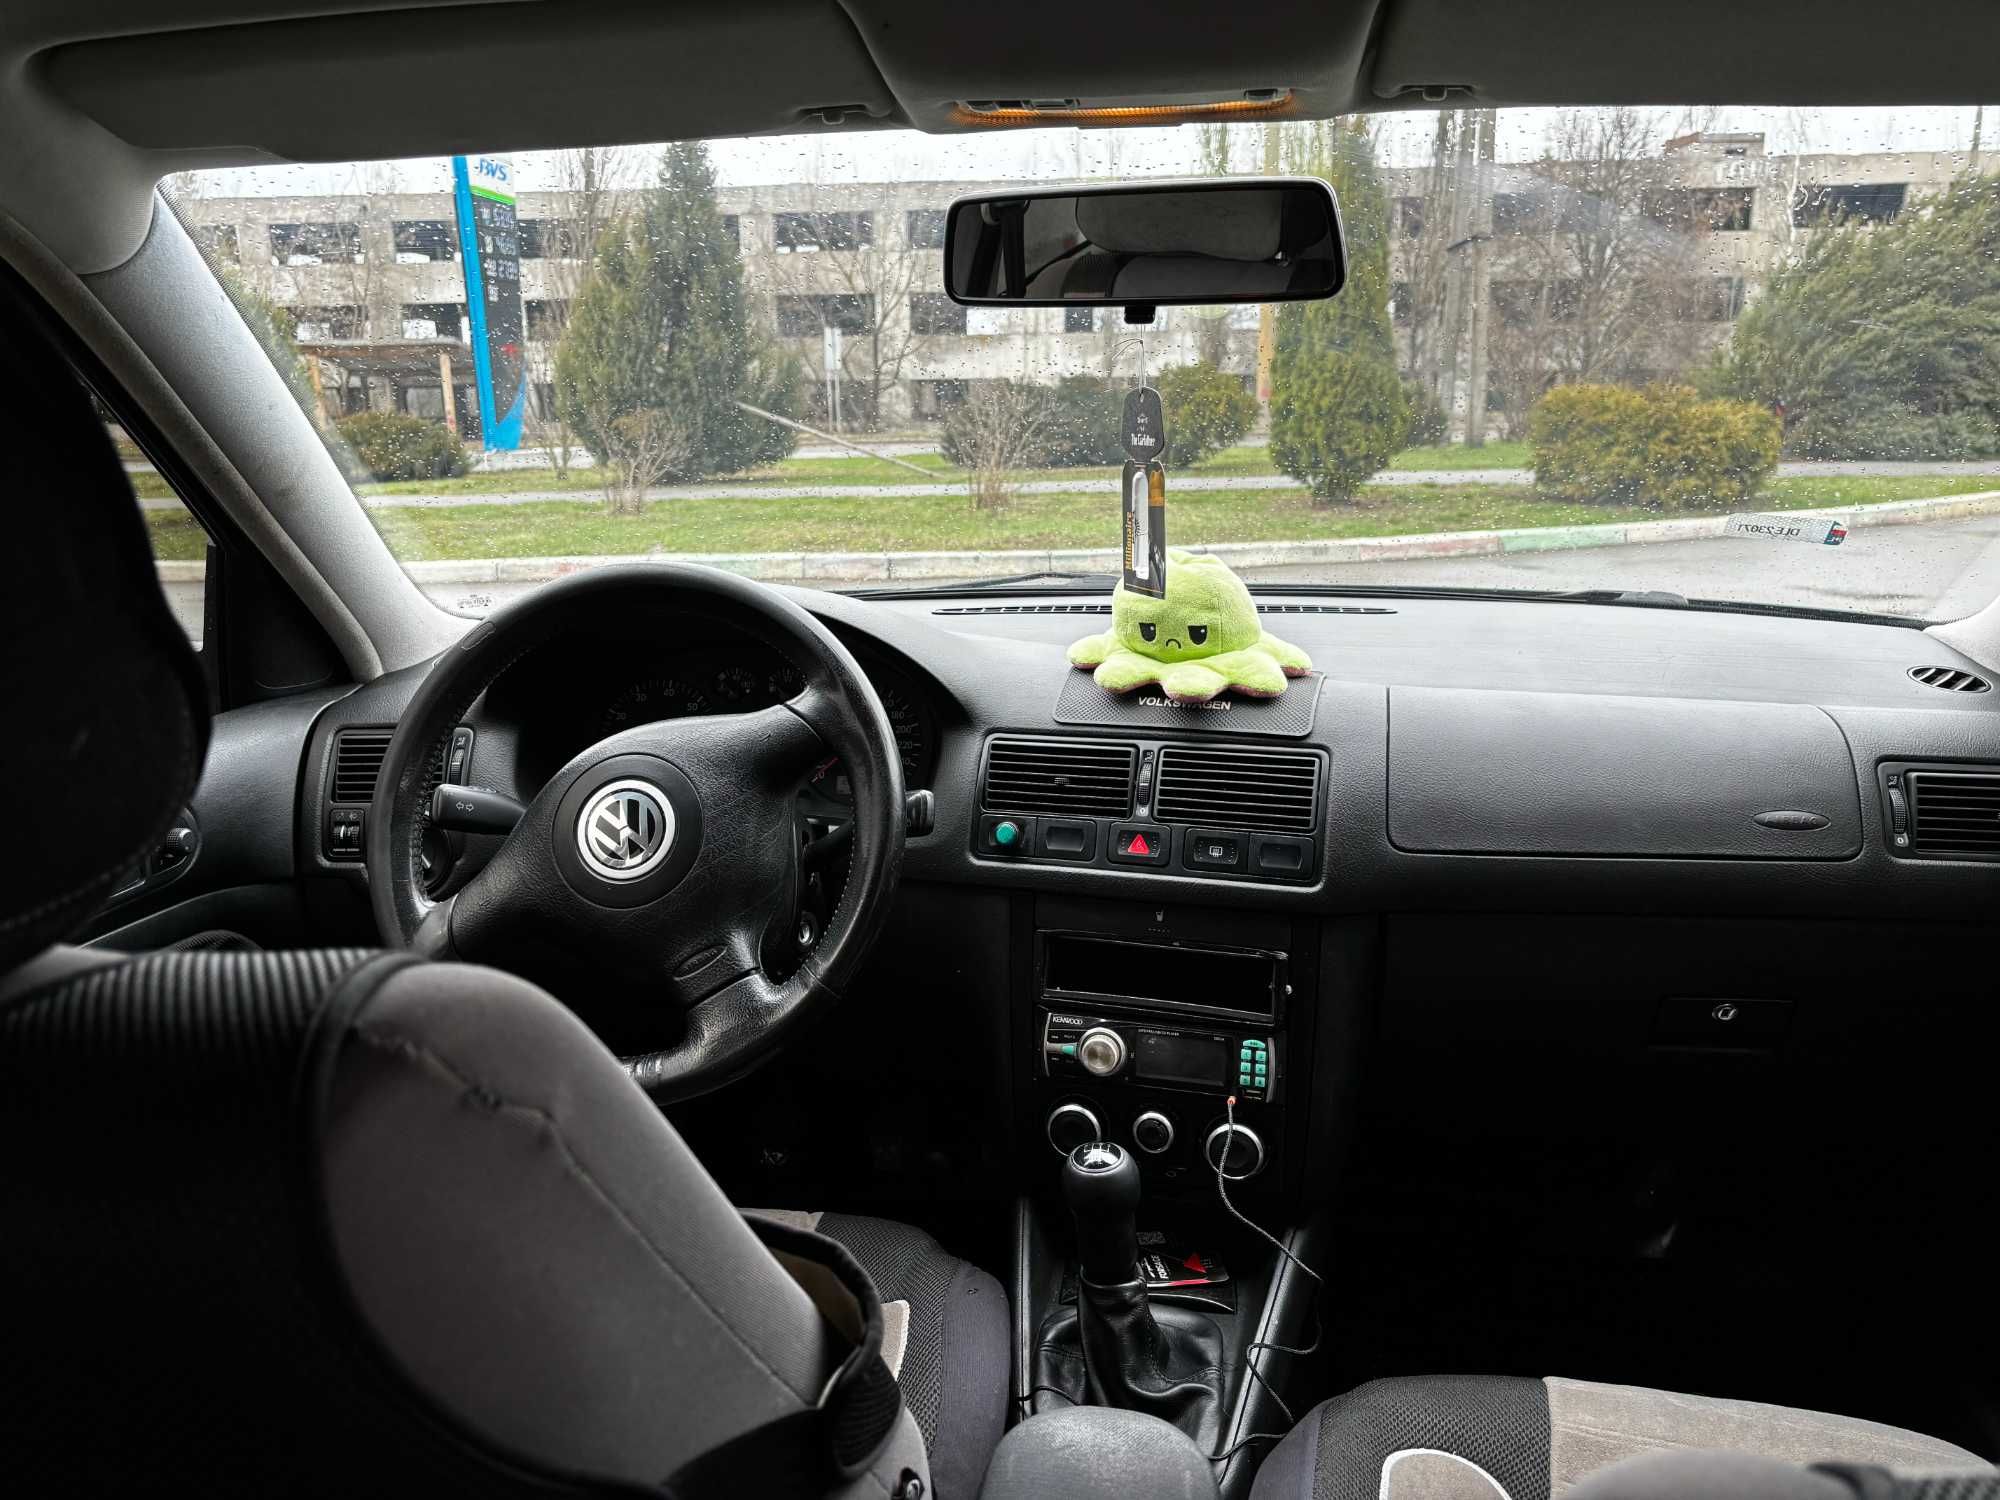 Автомобиль Volkswagen Golf IV